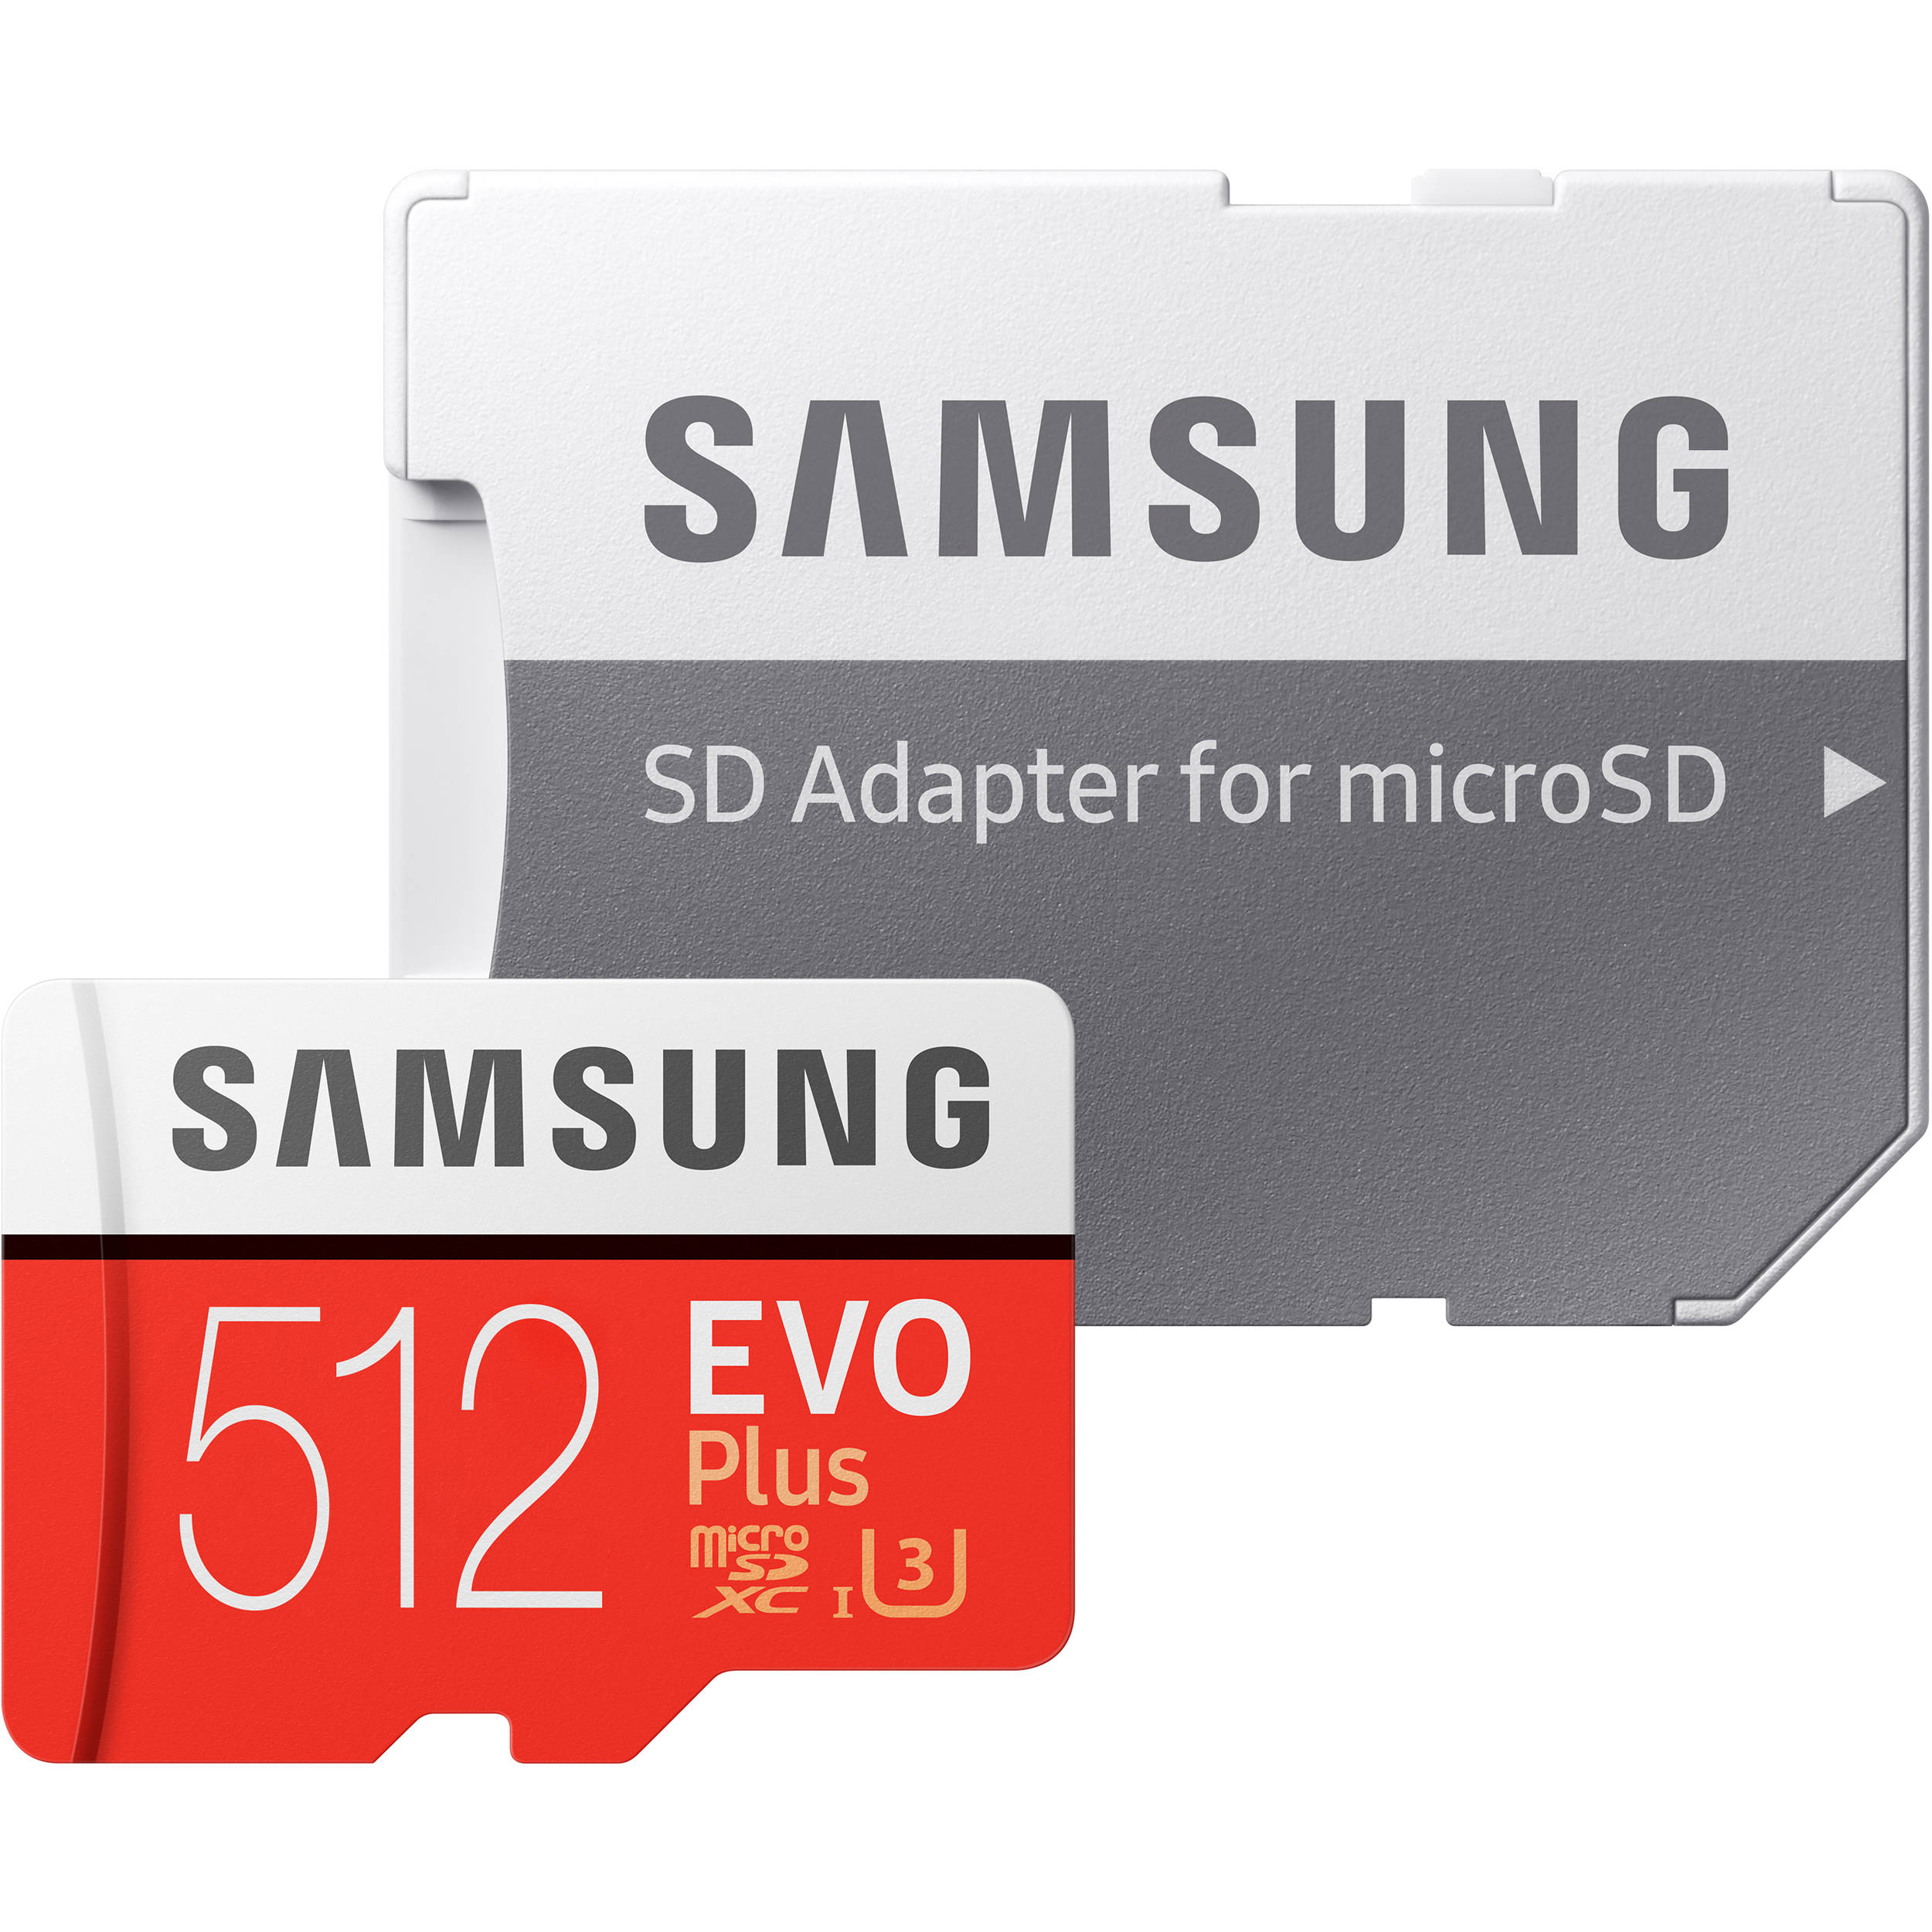 کارت حافظه microSDXC سامسونگ مدل evo plus کلاس 10 استاندارد UHS-I U1 سرعت 100MBps ظرفیت 512 گیگابایت به همراه آداپتور SD